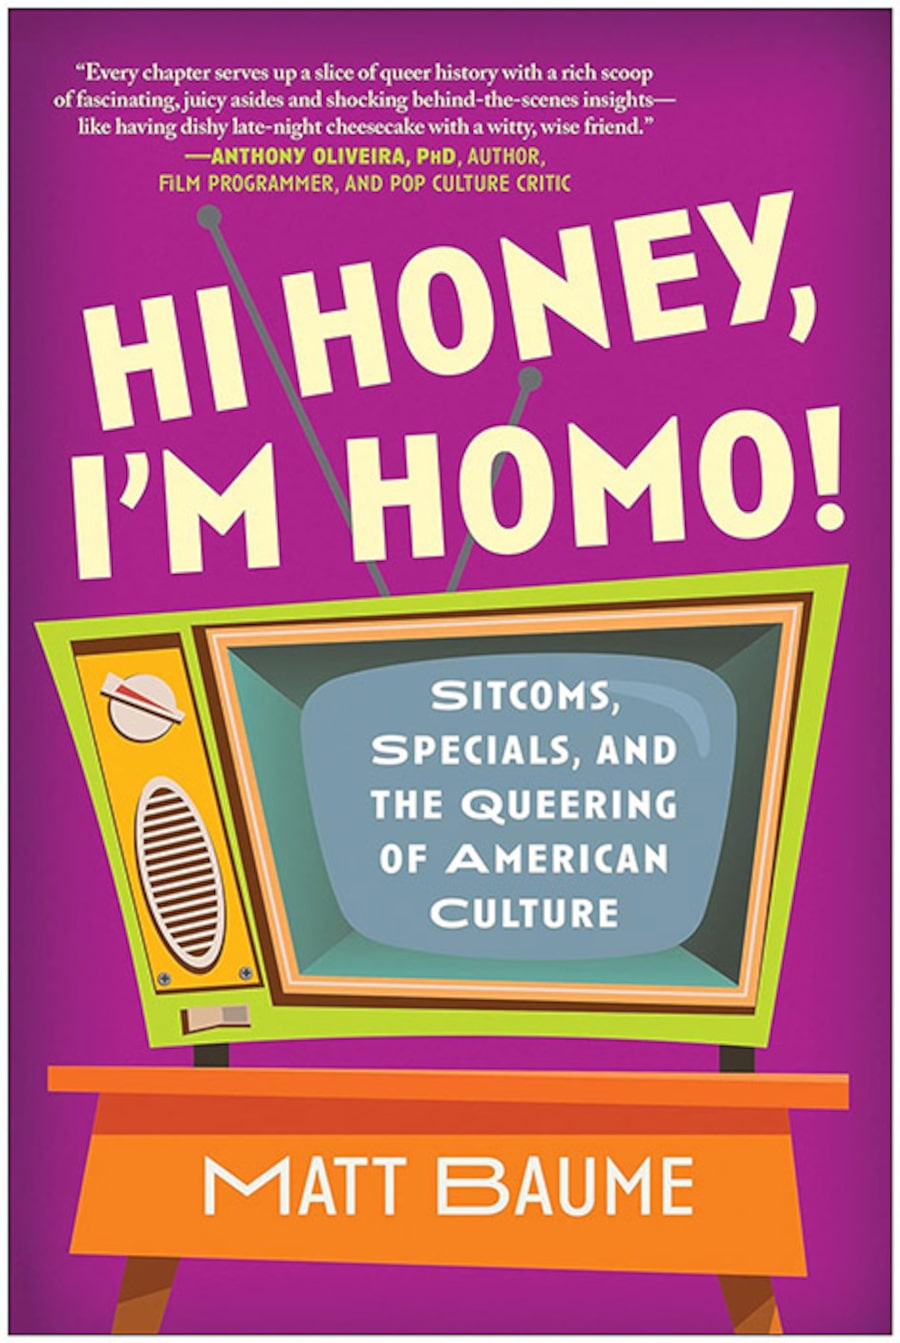 Hi Honey, I’m Homo!